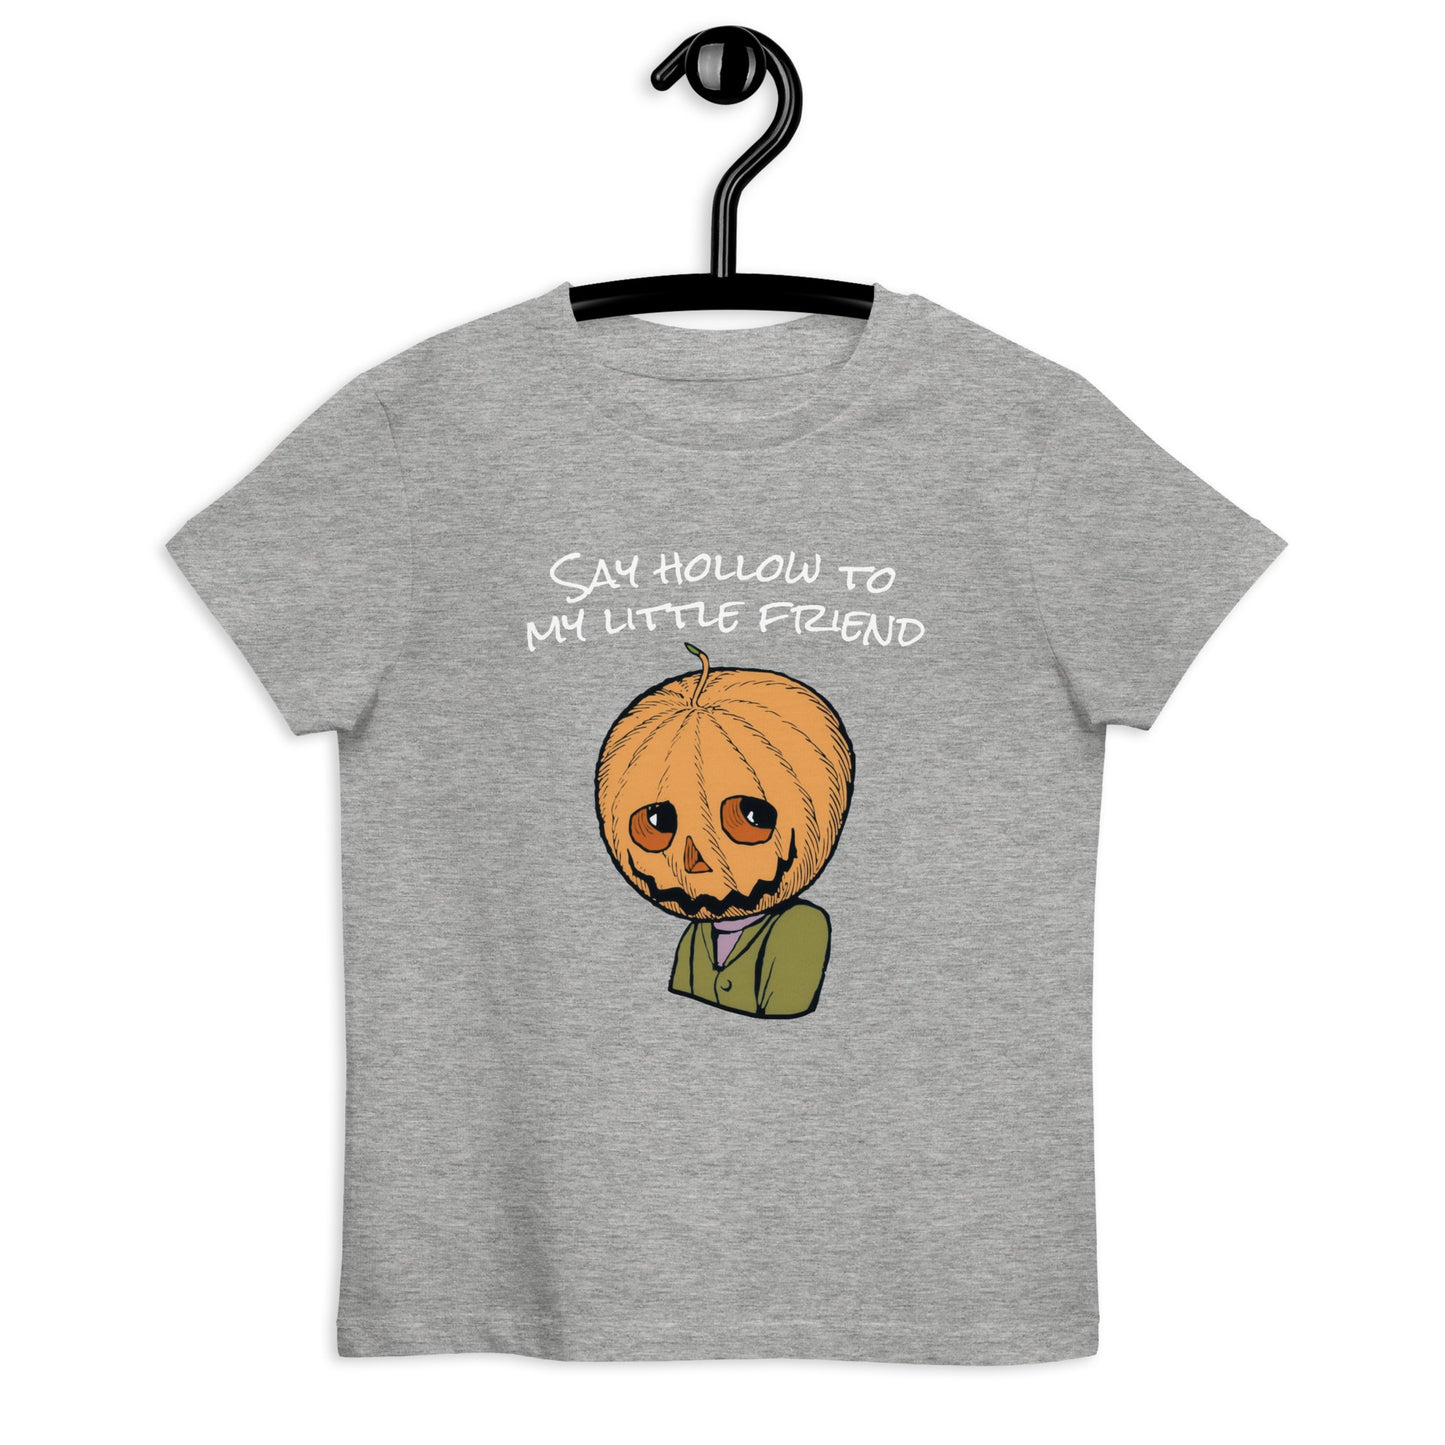 My Little Friend Organic cotton kids t-shirt - Halloween Pumpkin